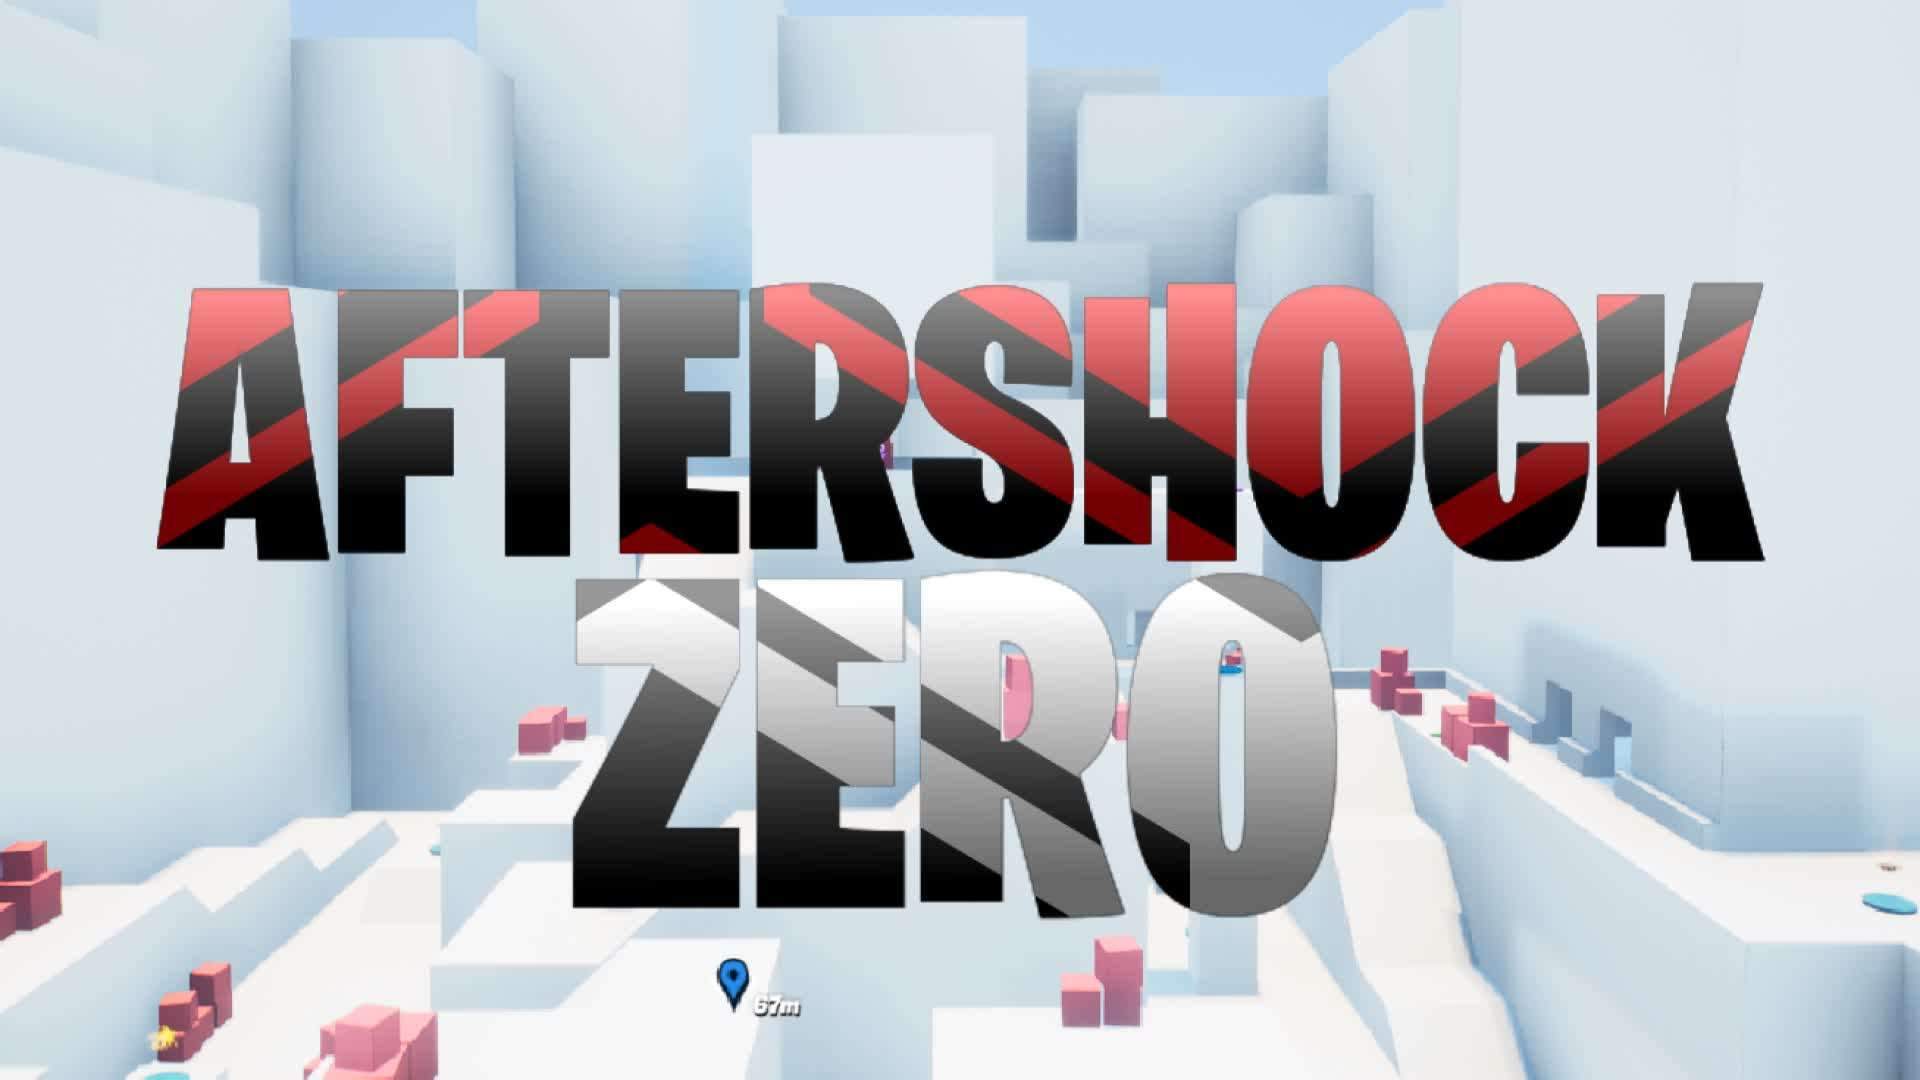 Aftershock Zero